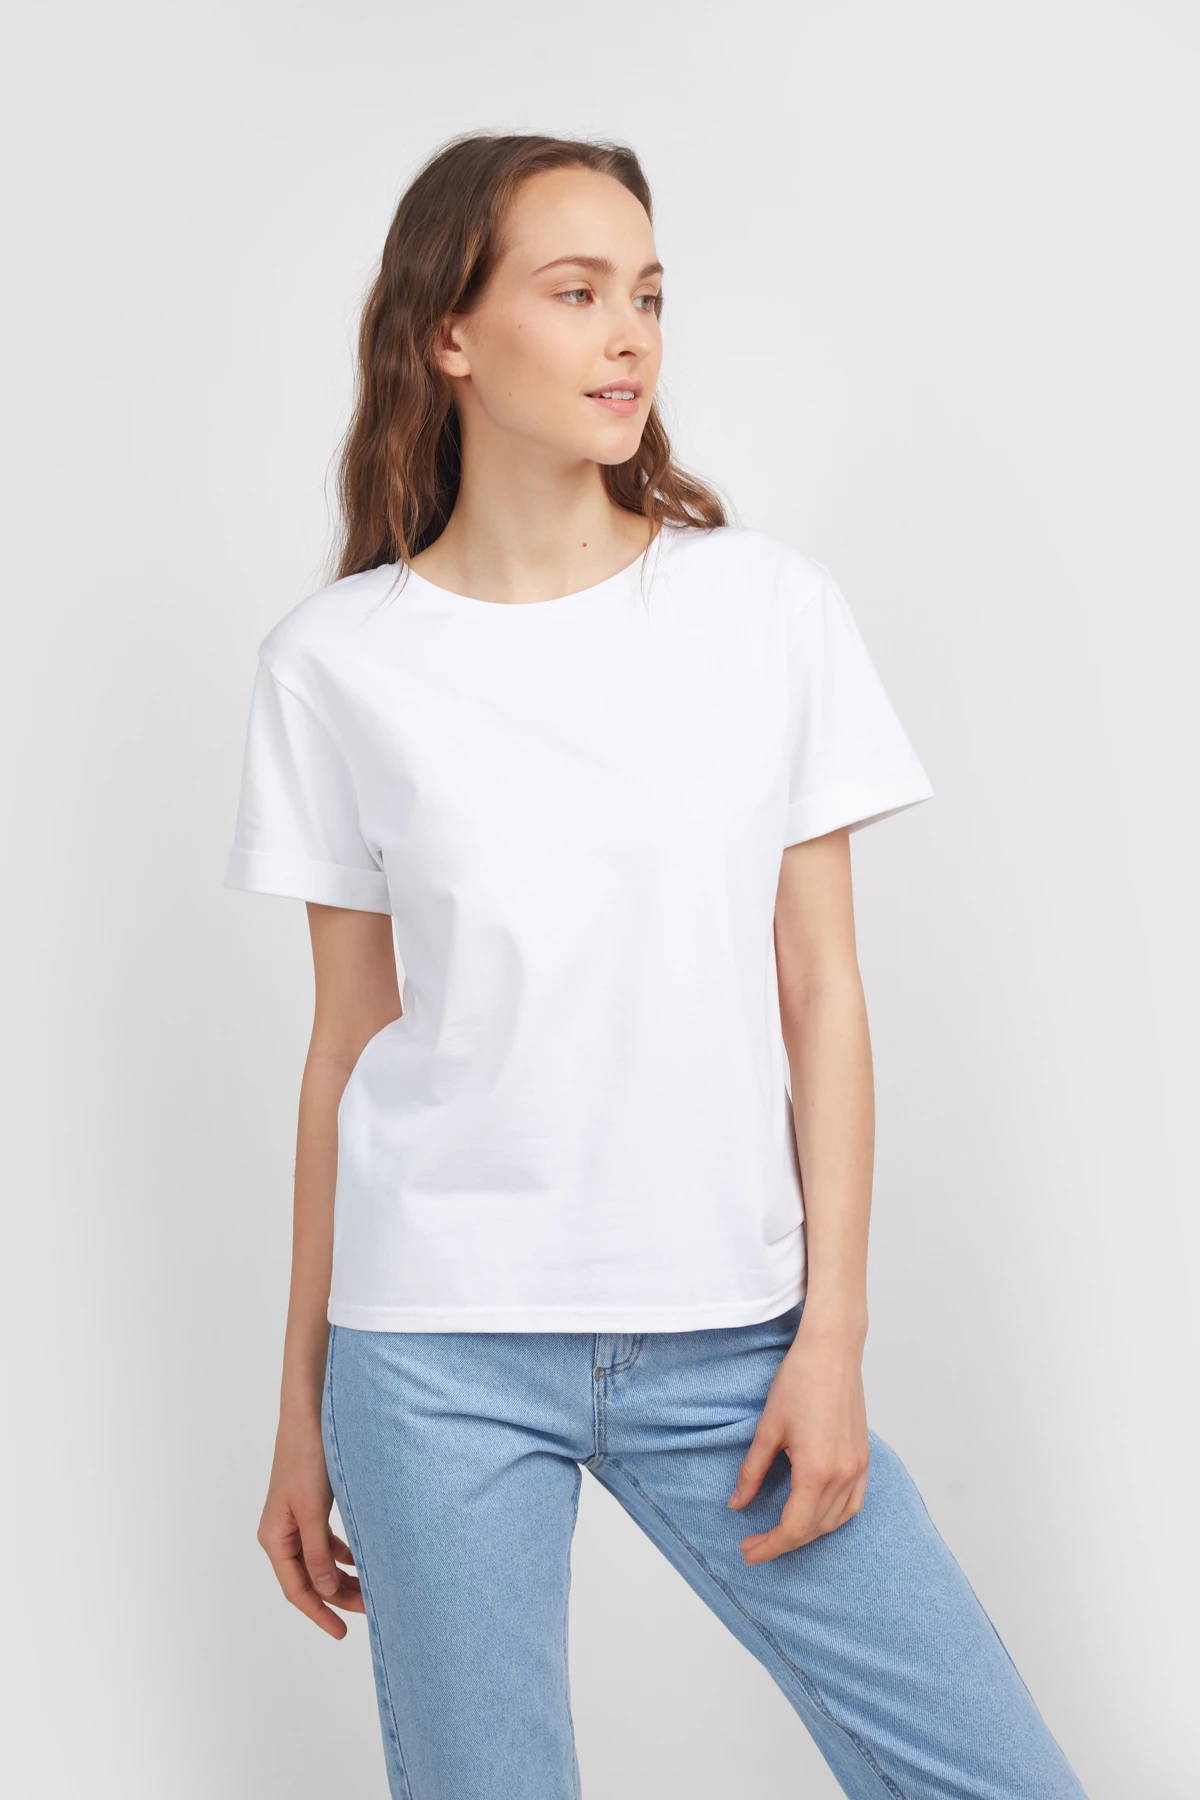 Біла футболка зі спущеною лінією плеча і манжетами, фото 2